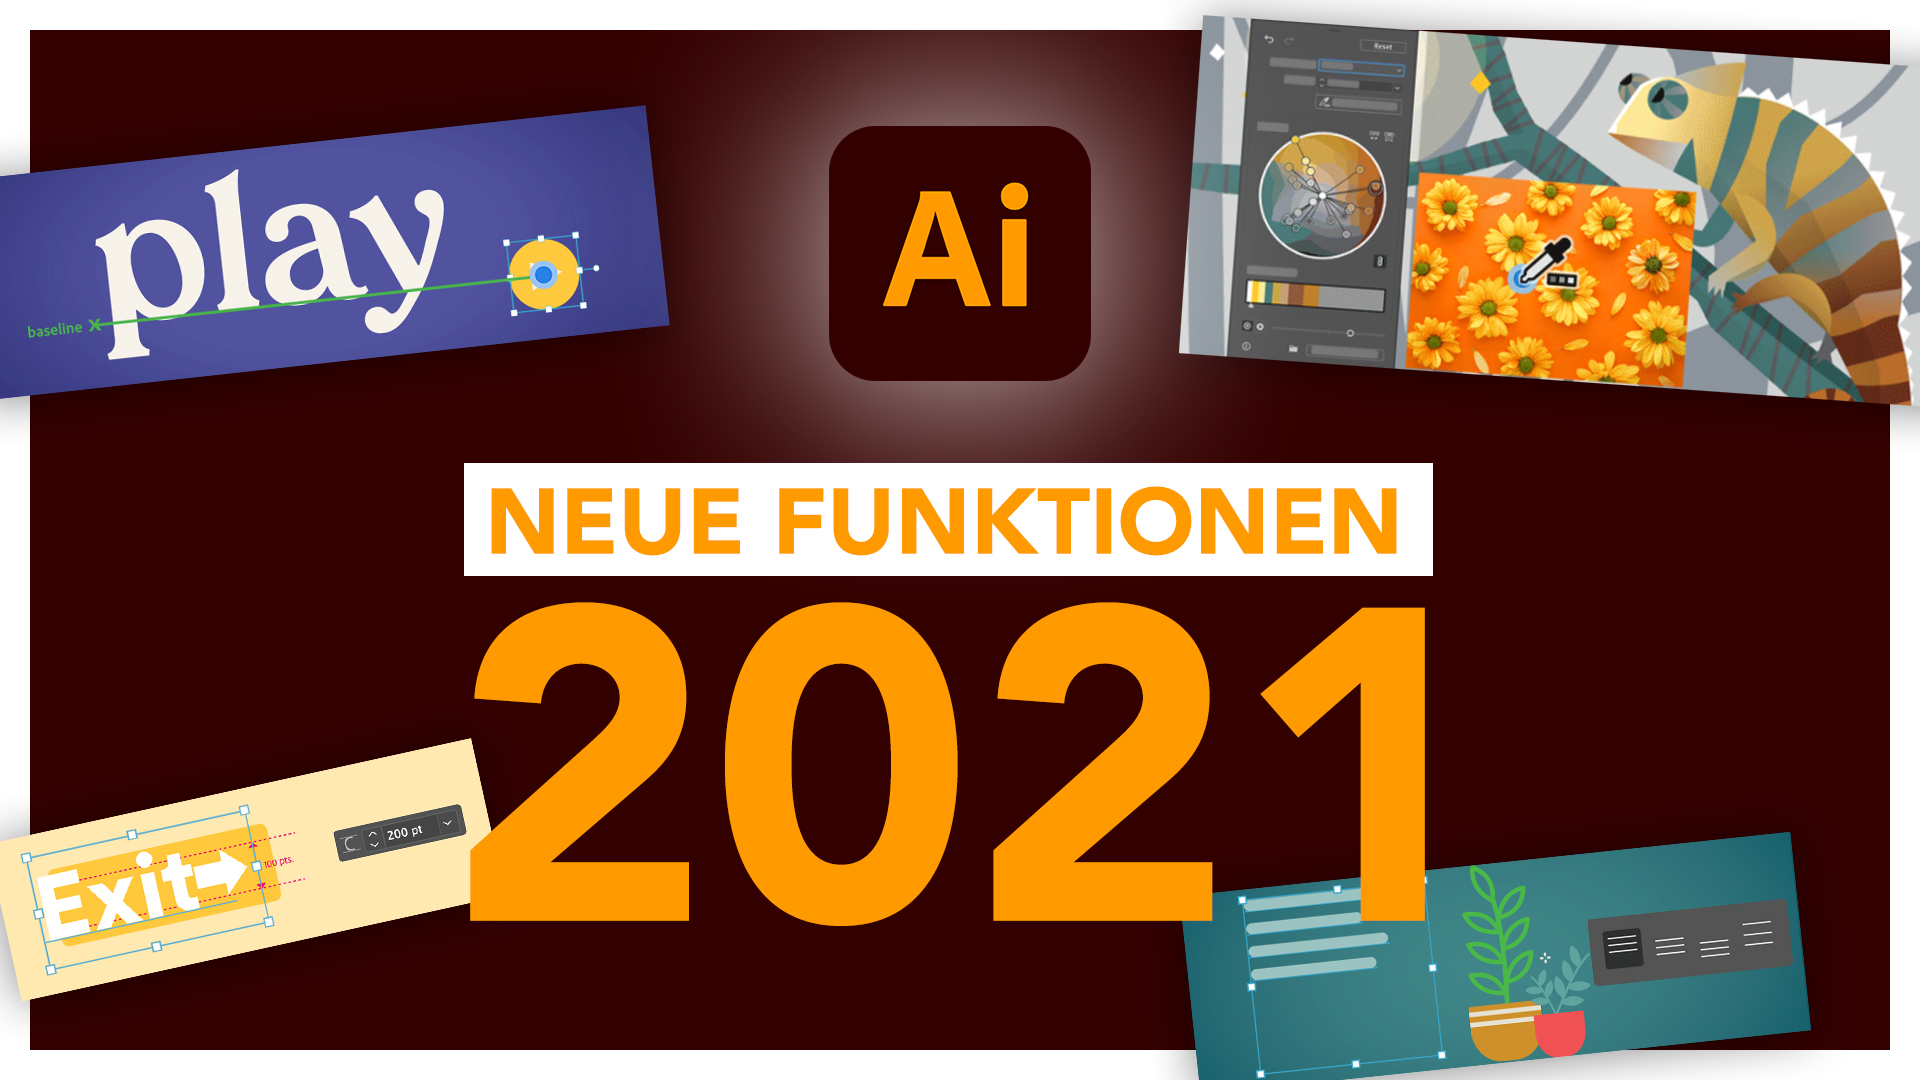 Neu in Adobe Illustrator 2021 (Version 25.0): Alle neuen Funktionen im Überblick